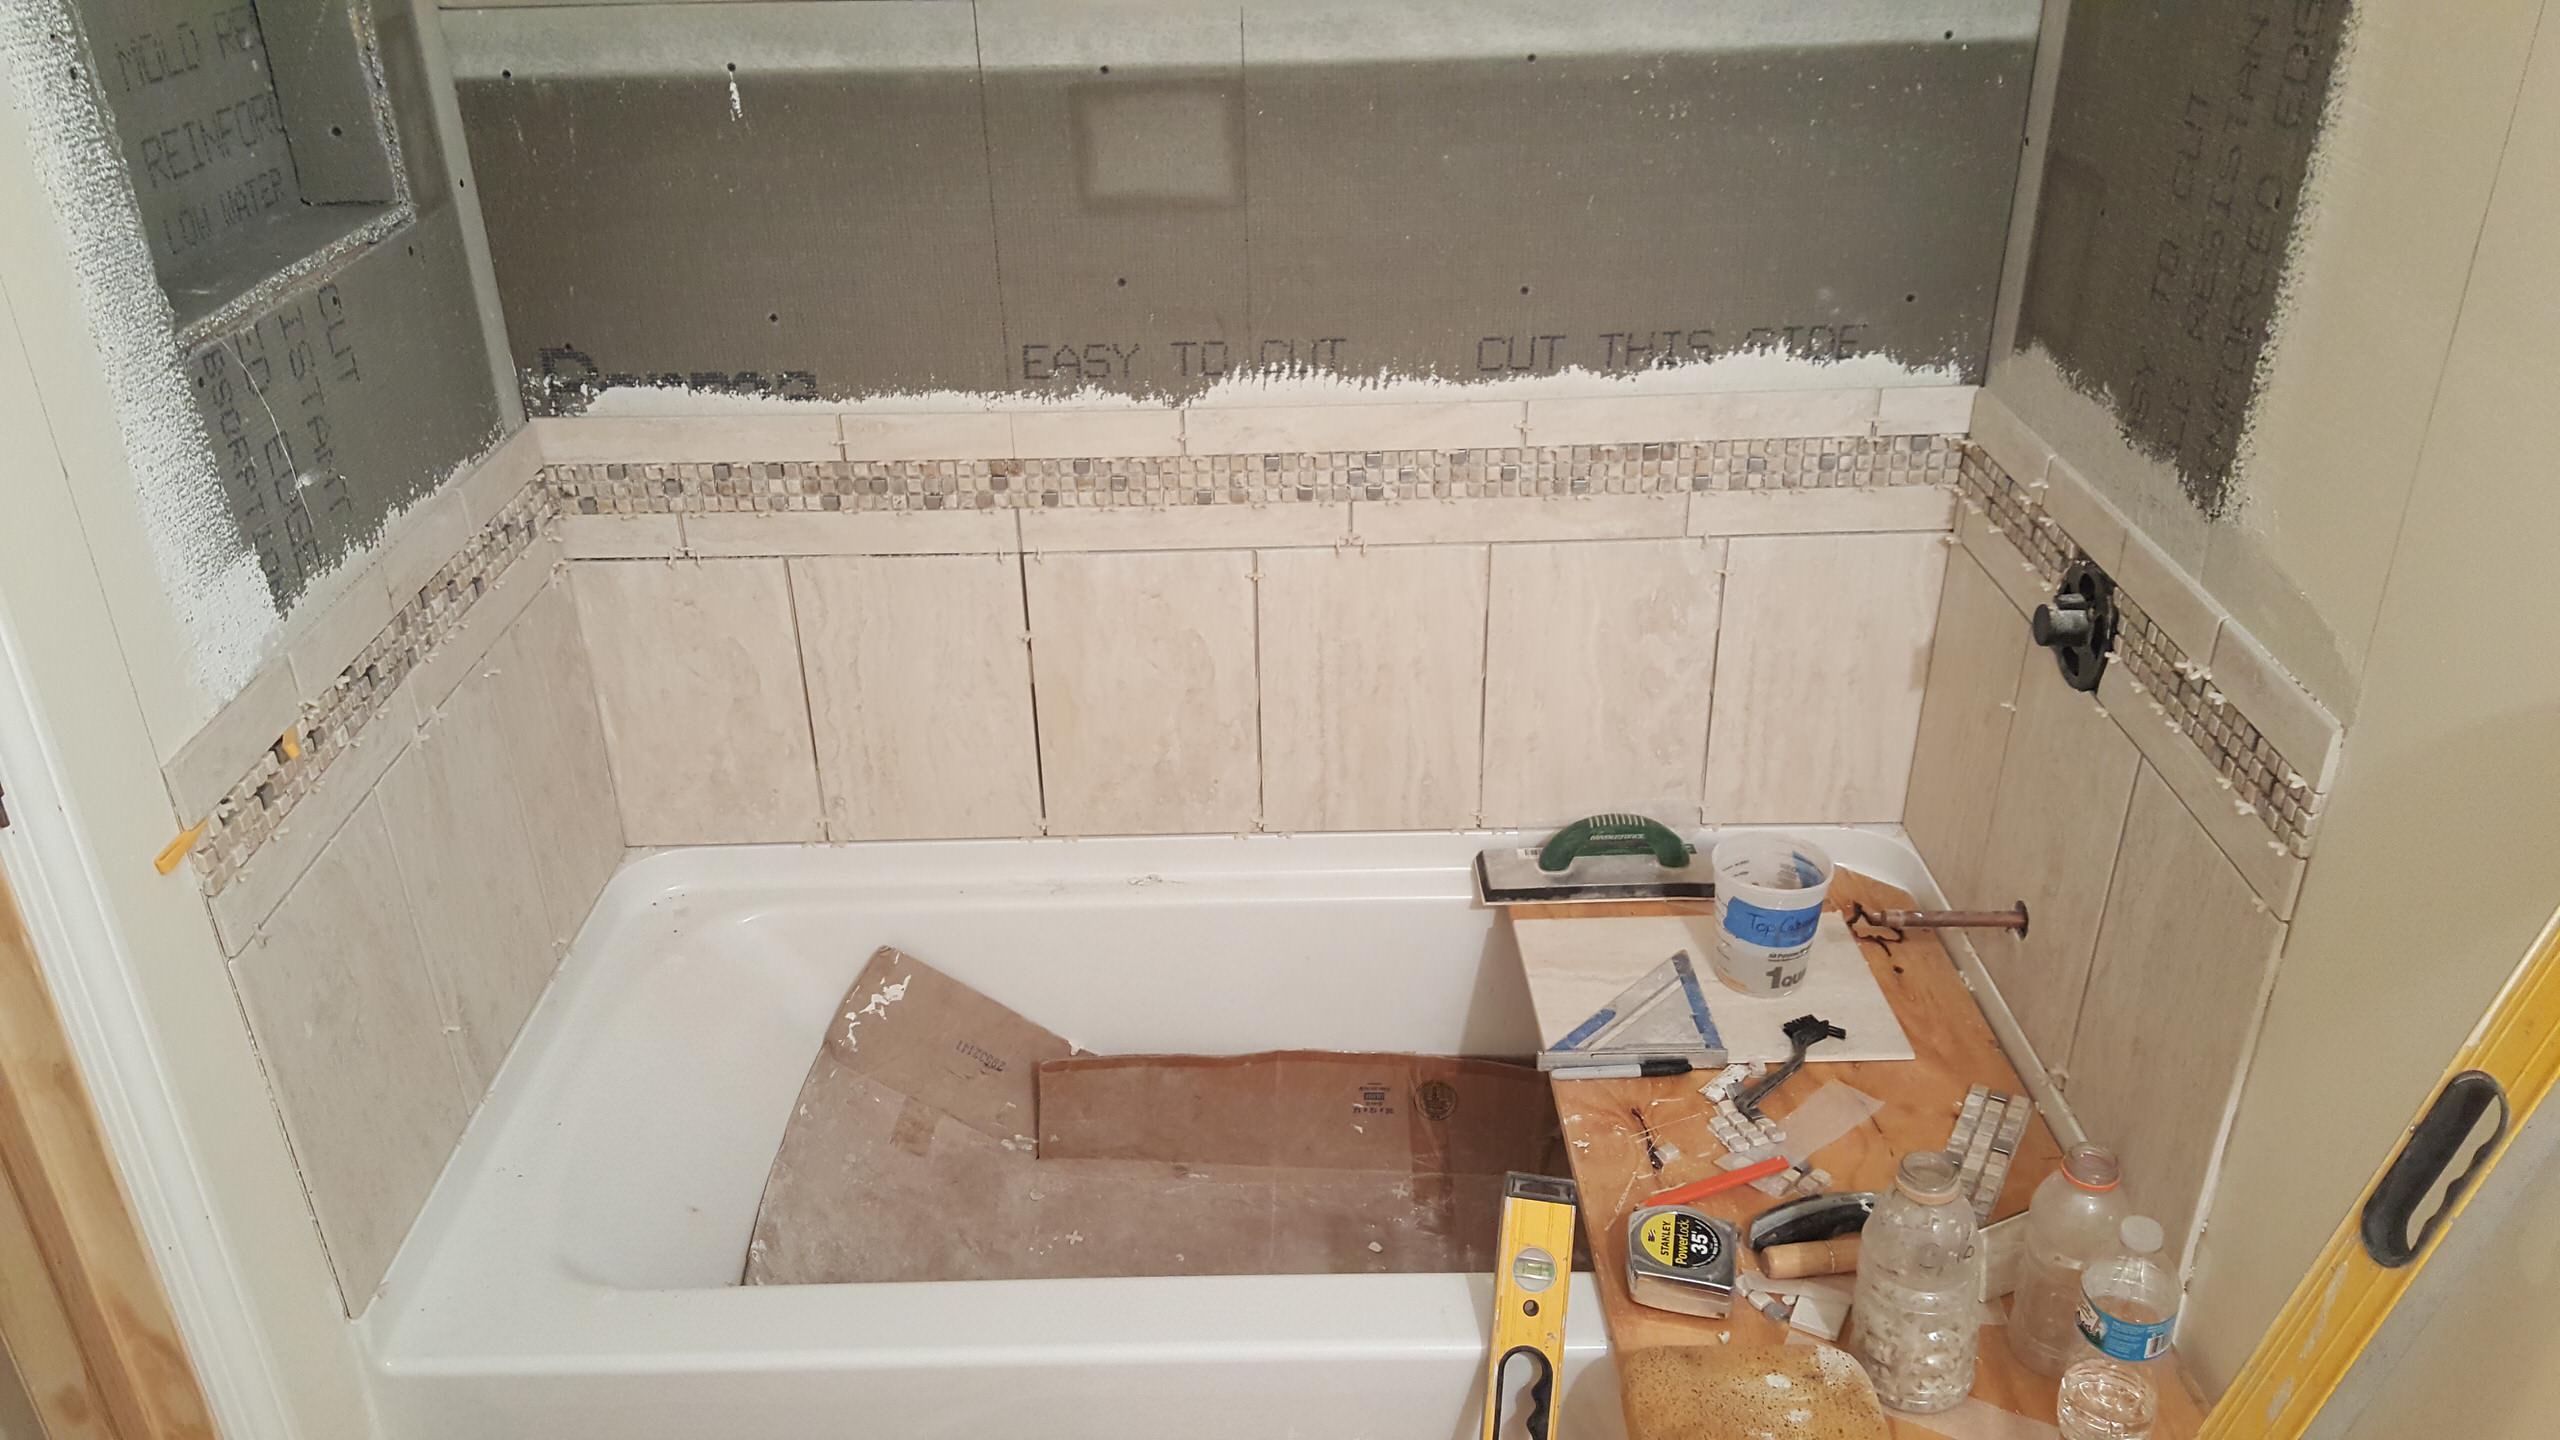 Shower tile getting installed